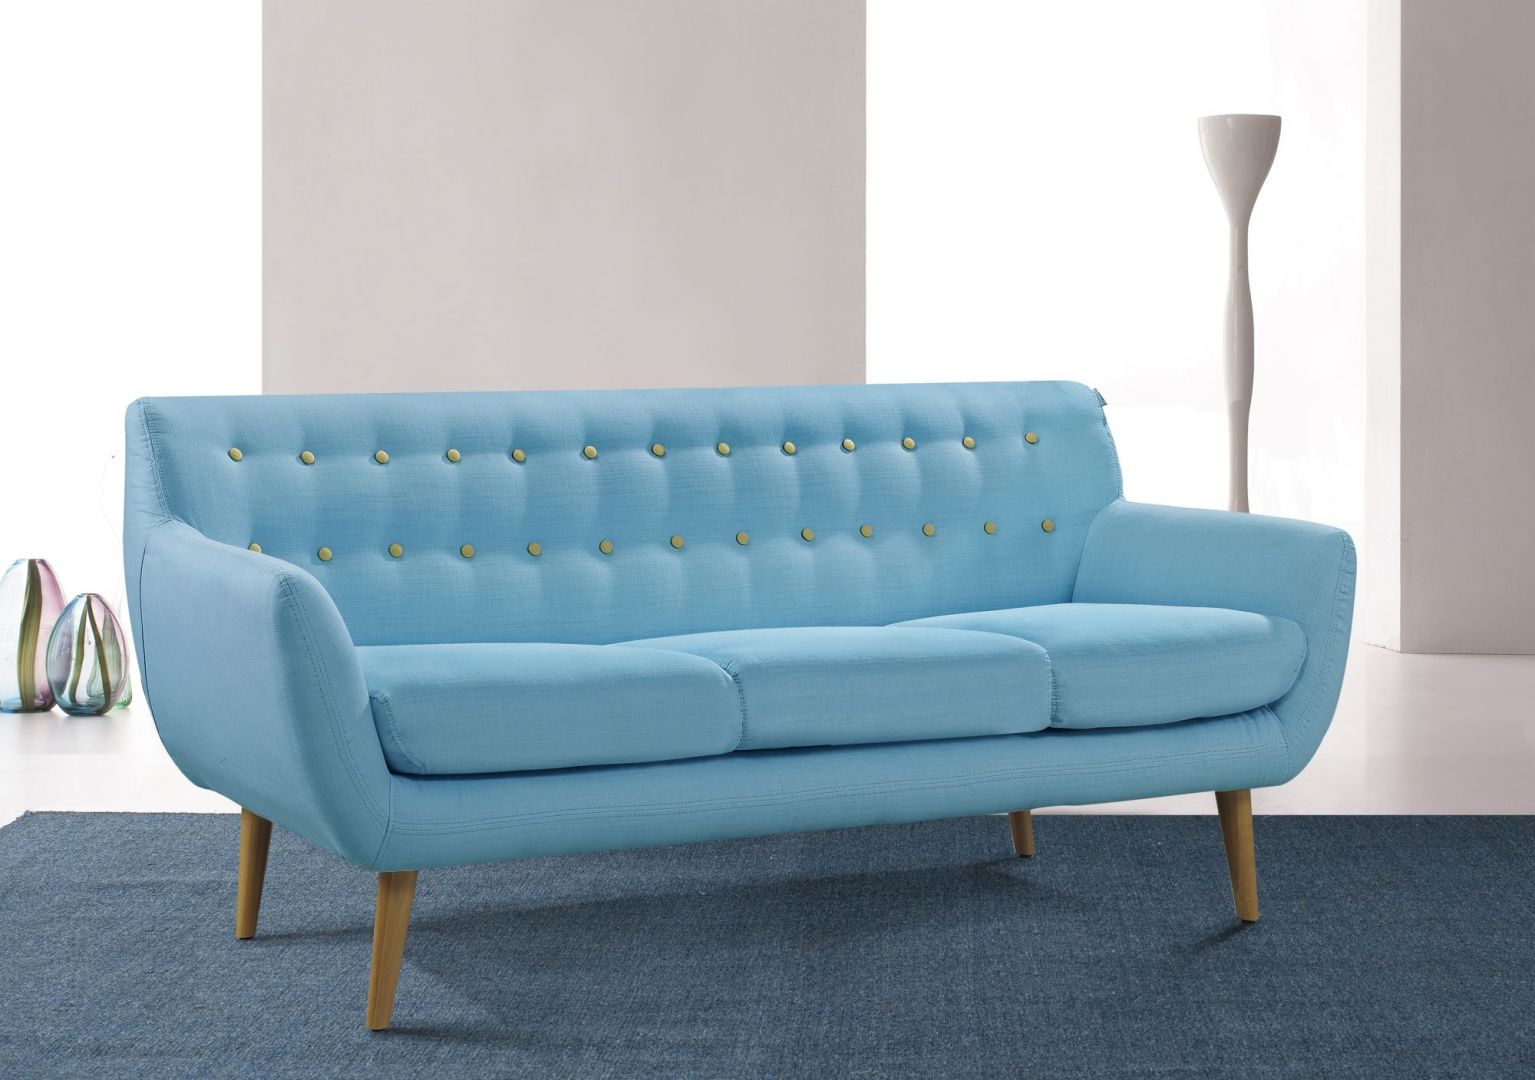 Ta trzyosobowa sofa z oryginalnym pikowaniem na oparciu to oryginalny projekt. Drewniane wysokie nóżki pięknie kontrastują z niebieską tkaniną. Sofa Sixty Design. Fot. Cranmore Home